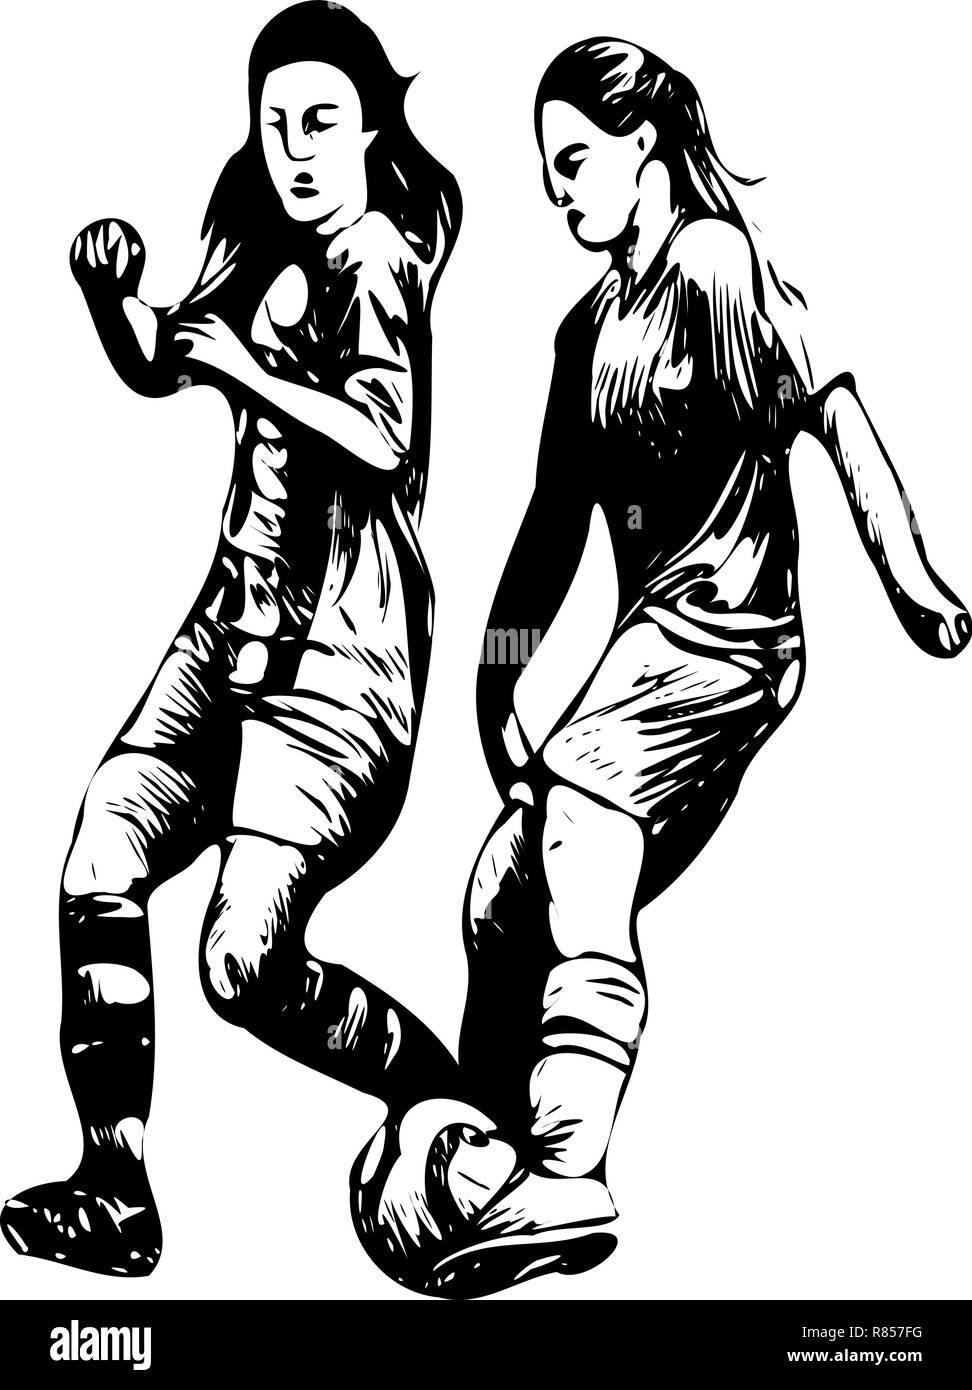 L'art vectoriel dynamique en noir et blanc met en valeur deux femmes farouchement stimulantes pour le football, une représentation puissante des prouesses du football féminin. Illustration de Vecteur